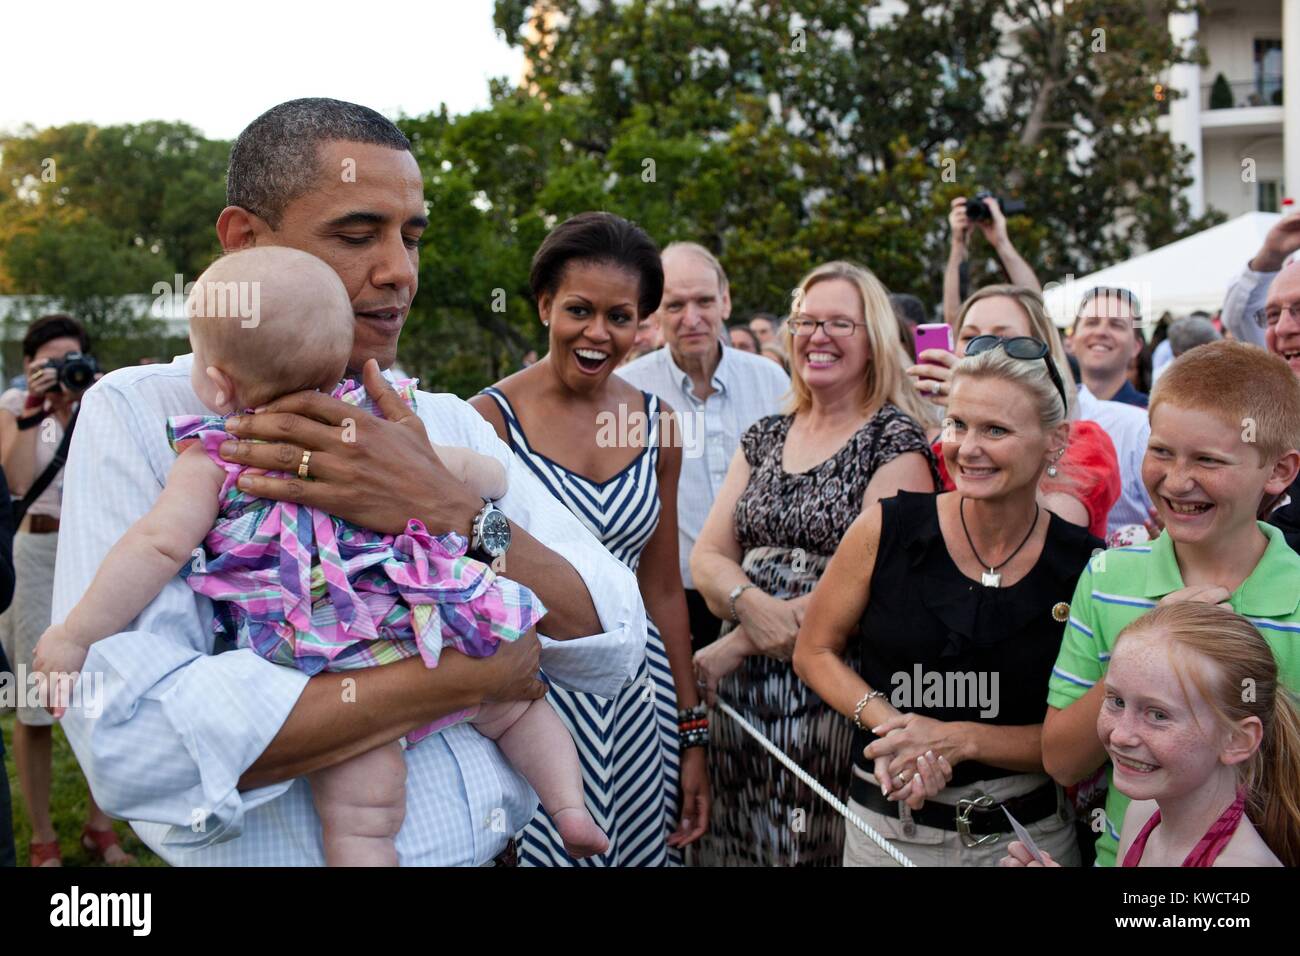 Il presidente Barack Obama lenisce un bimbo che piange al congressuale del picnic. Quando egli prese il bambino da Michelle subito smesso di piangere e quindi lei e gli altri " divertito di espressioni. South Lawn della Casa Bianca, 15 giugno 2011. (BSLOC 2015 3 28) Foto Stock